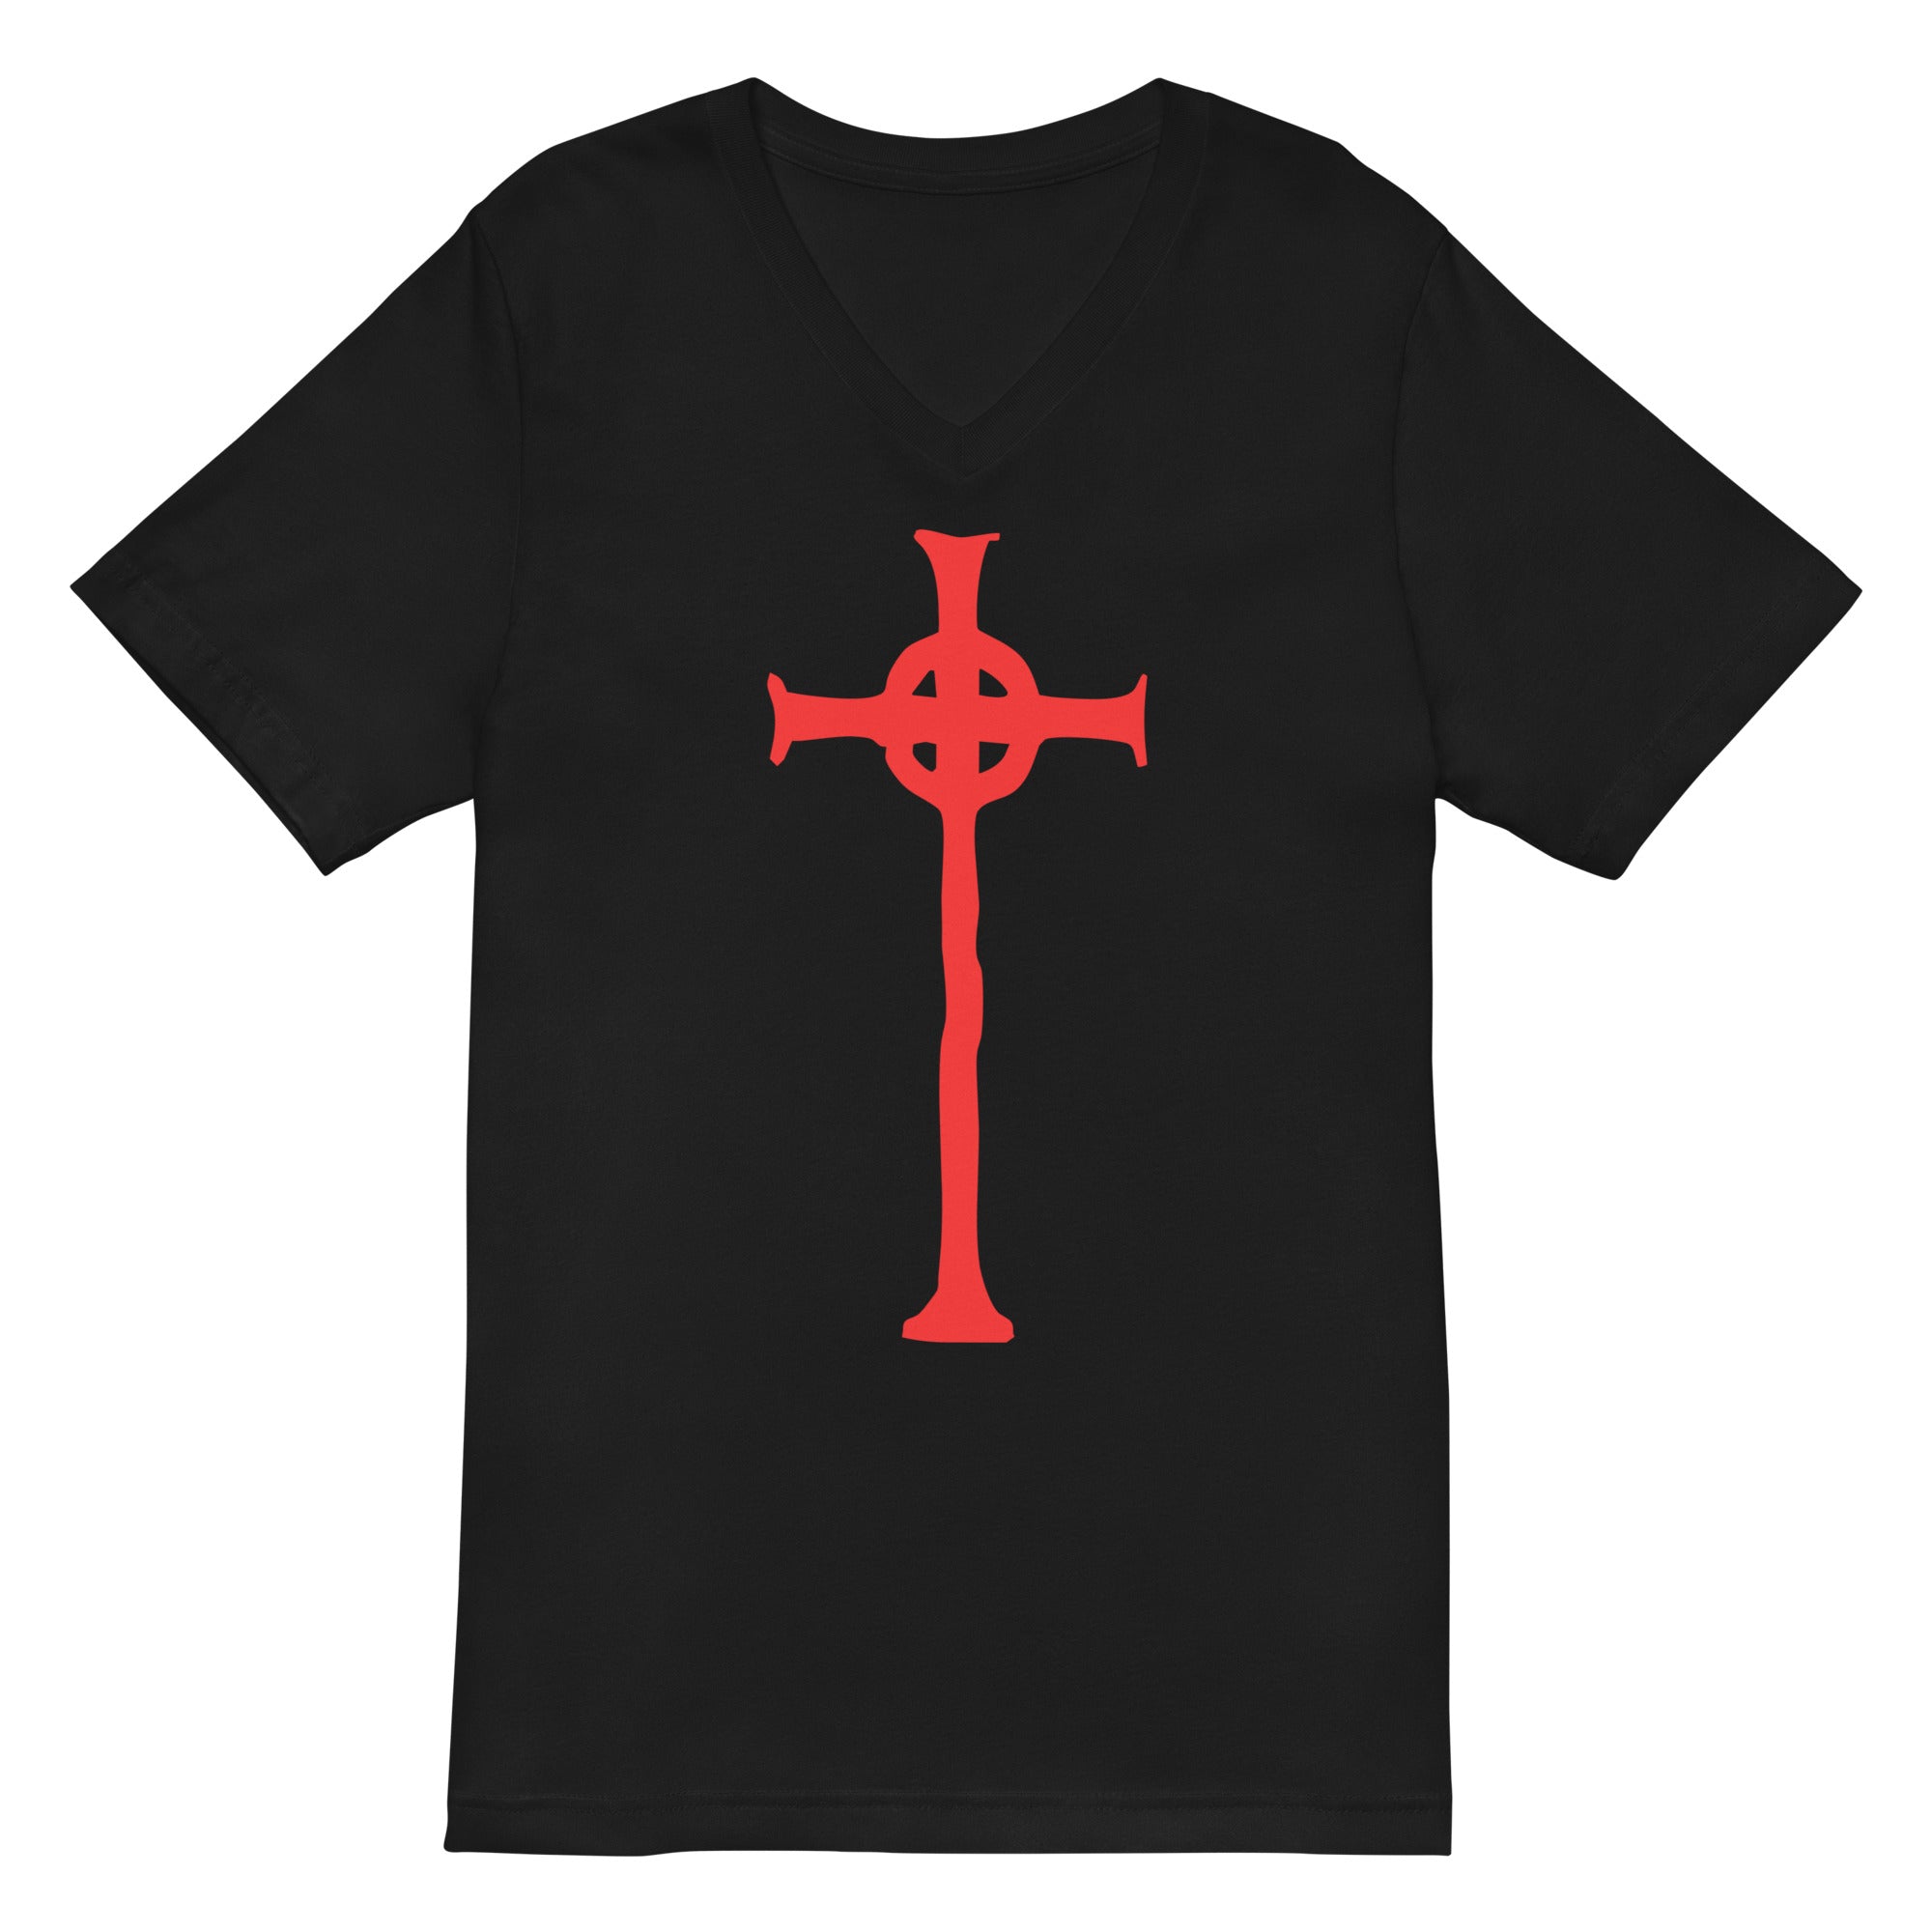 Vampire Hunter D Sign of the Cross Anime Women’s Short Sleeve V-Neck T-Shirt